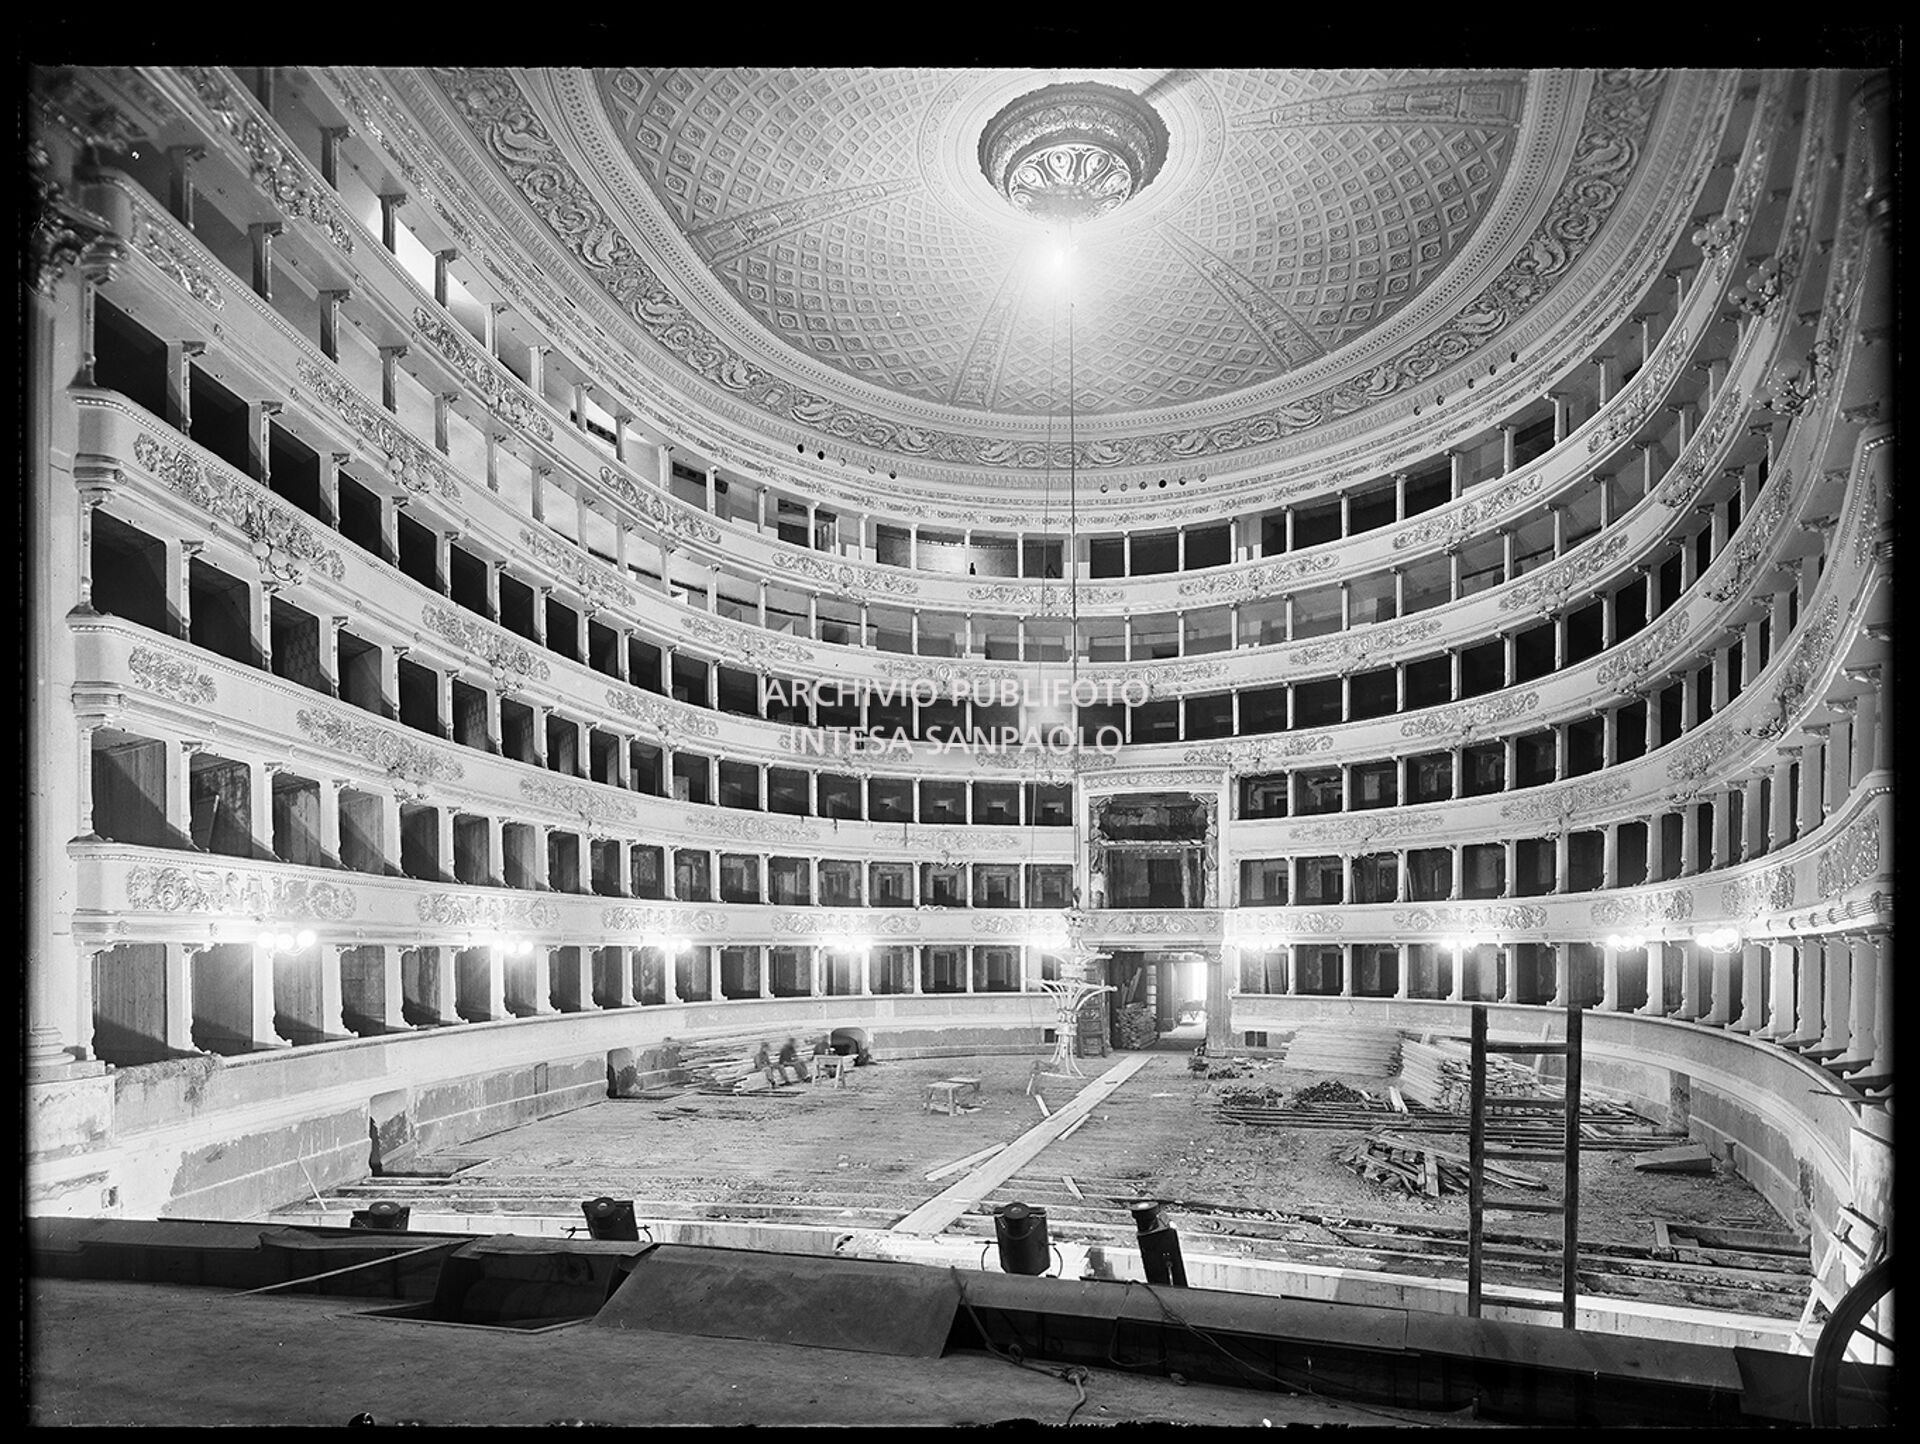 Ripresa dal palcoscenico della sala del Teatro alla Scala, durante i lavori di ricostruzione dopo i bombardamenti che lo avevano gravemente danneggiato